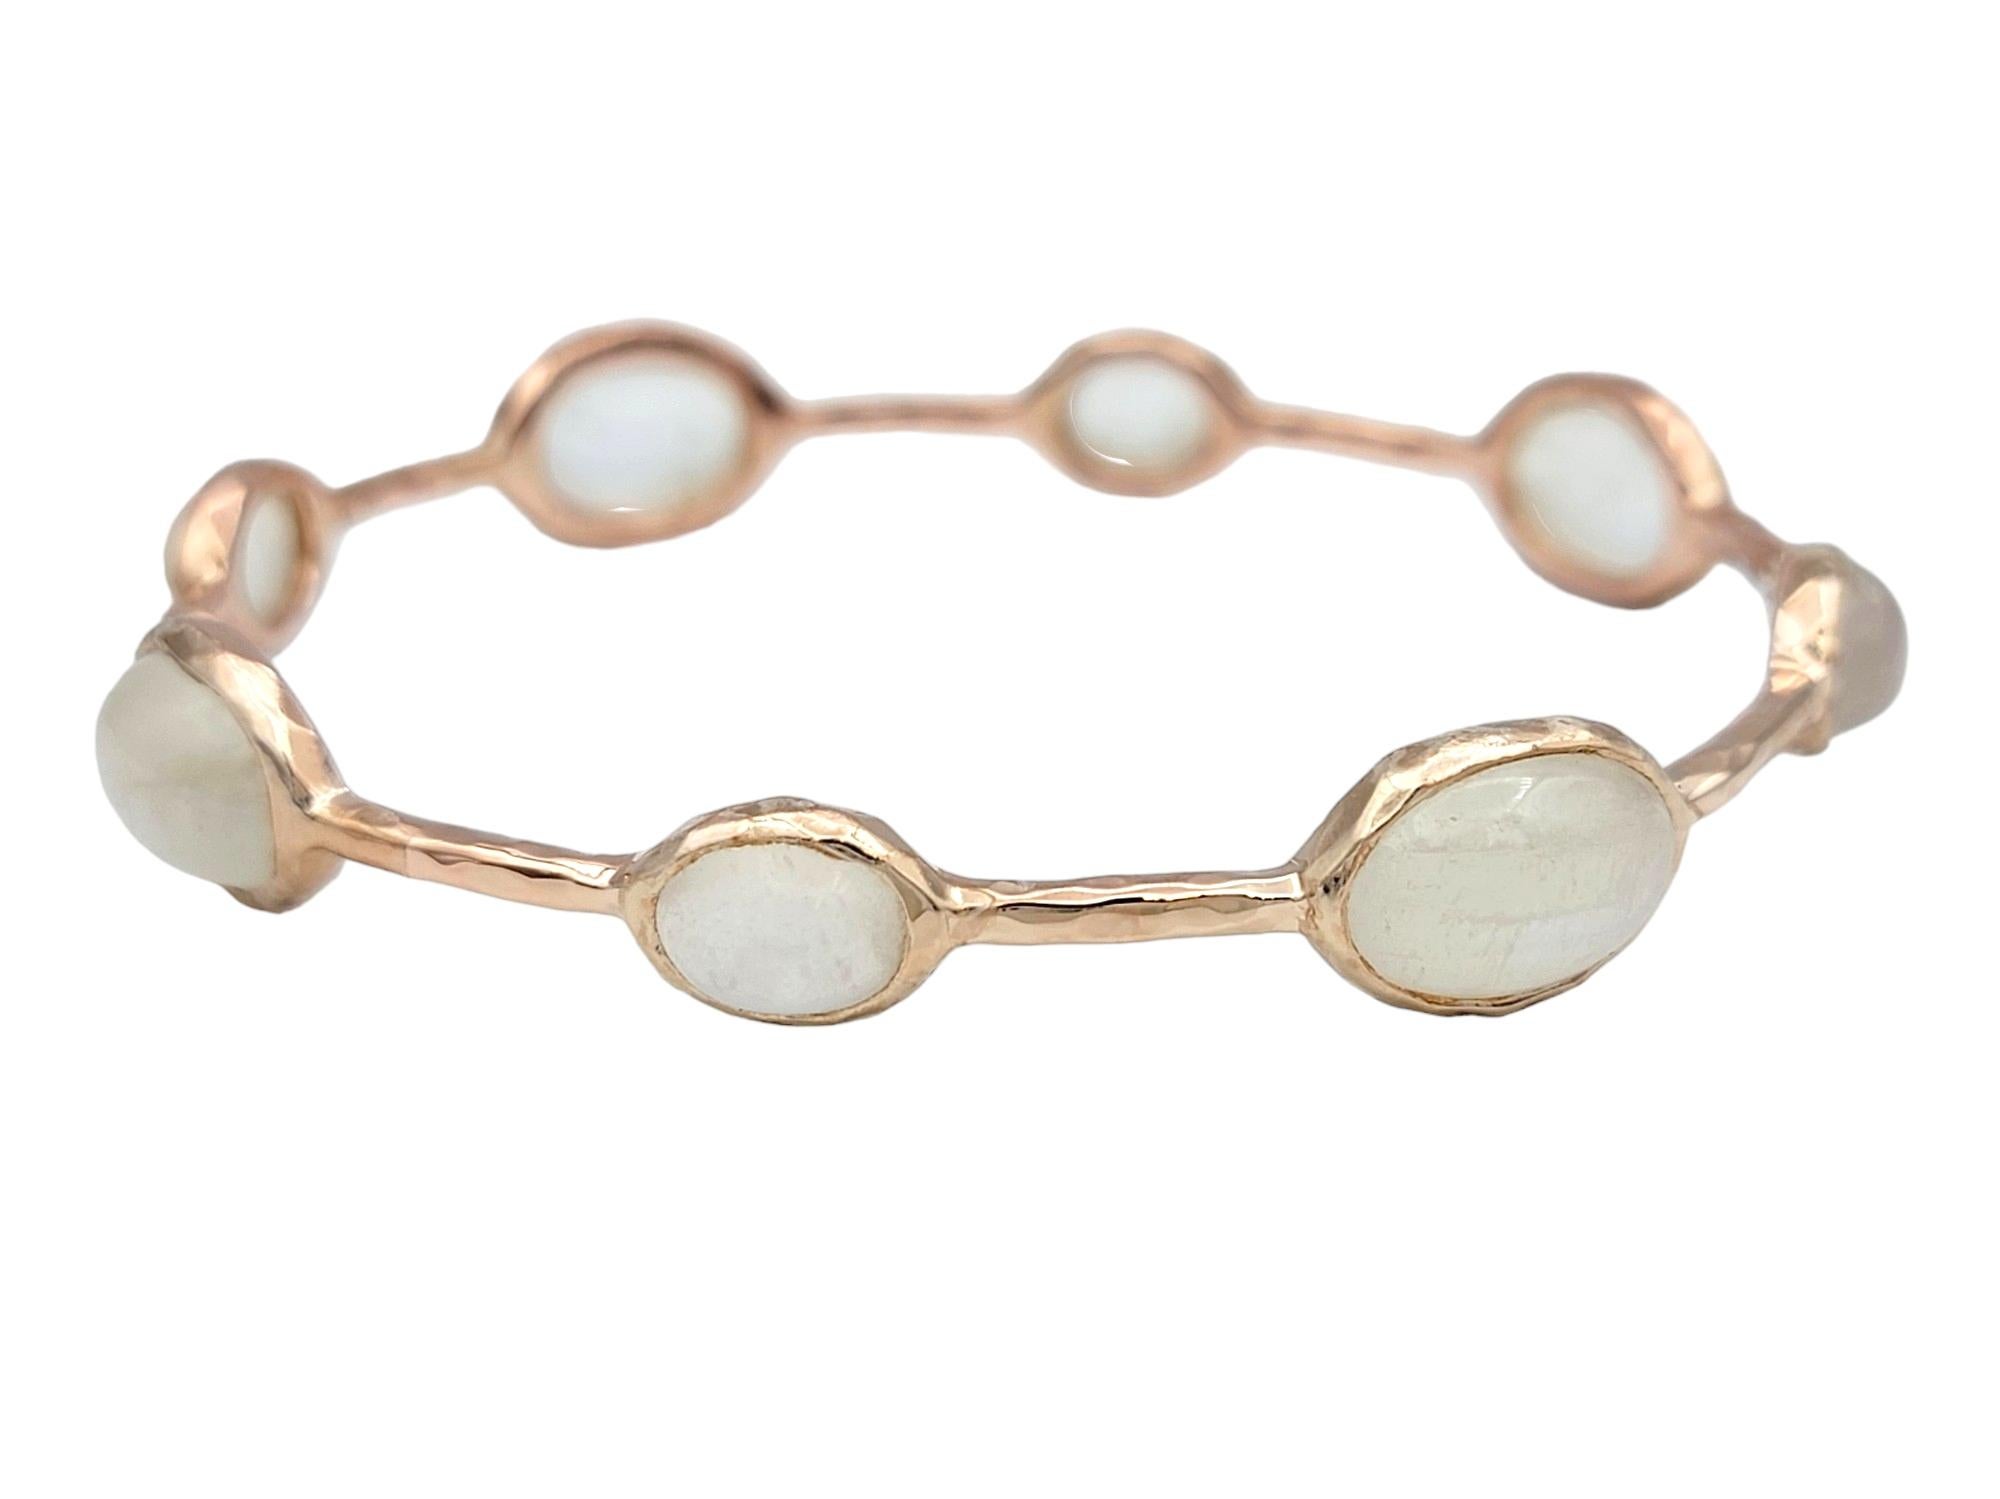 D'une beauté éthérée et d'une élégance discrète, ce bracelet bangle d'Ippolita est un ajout captivant à toute collection de bijoux. Fabriqué en argent sterling de couleur rose, le bracelet arbore une teinte délicate qui ajoute une subtile touche de